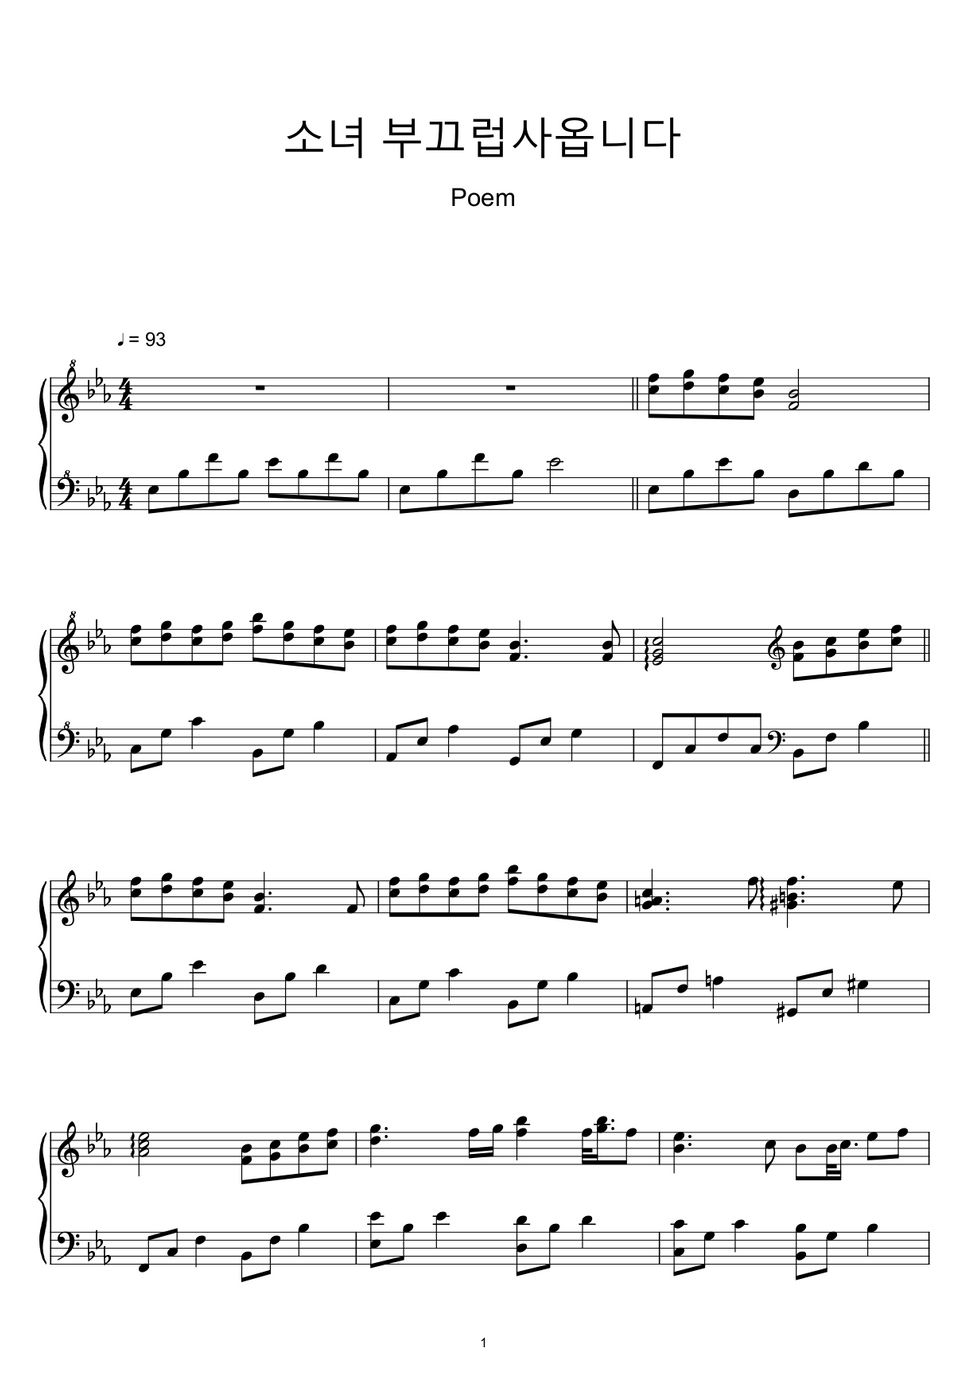 피아노 포엠 (Piano Poem) - 소녀, 부끄럽사옵니다 (Sheet Music, MIDI,) by sayu